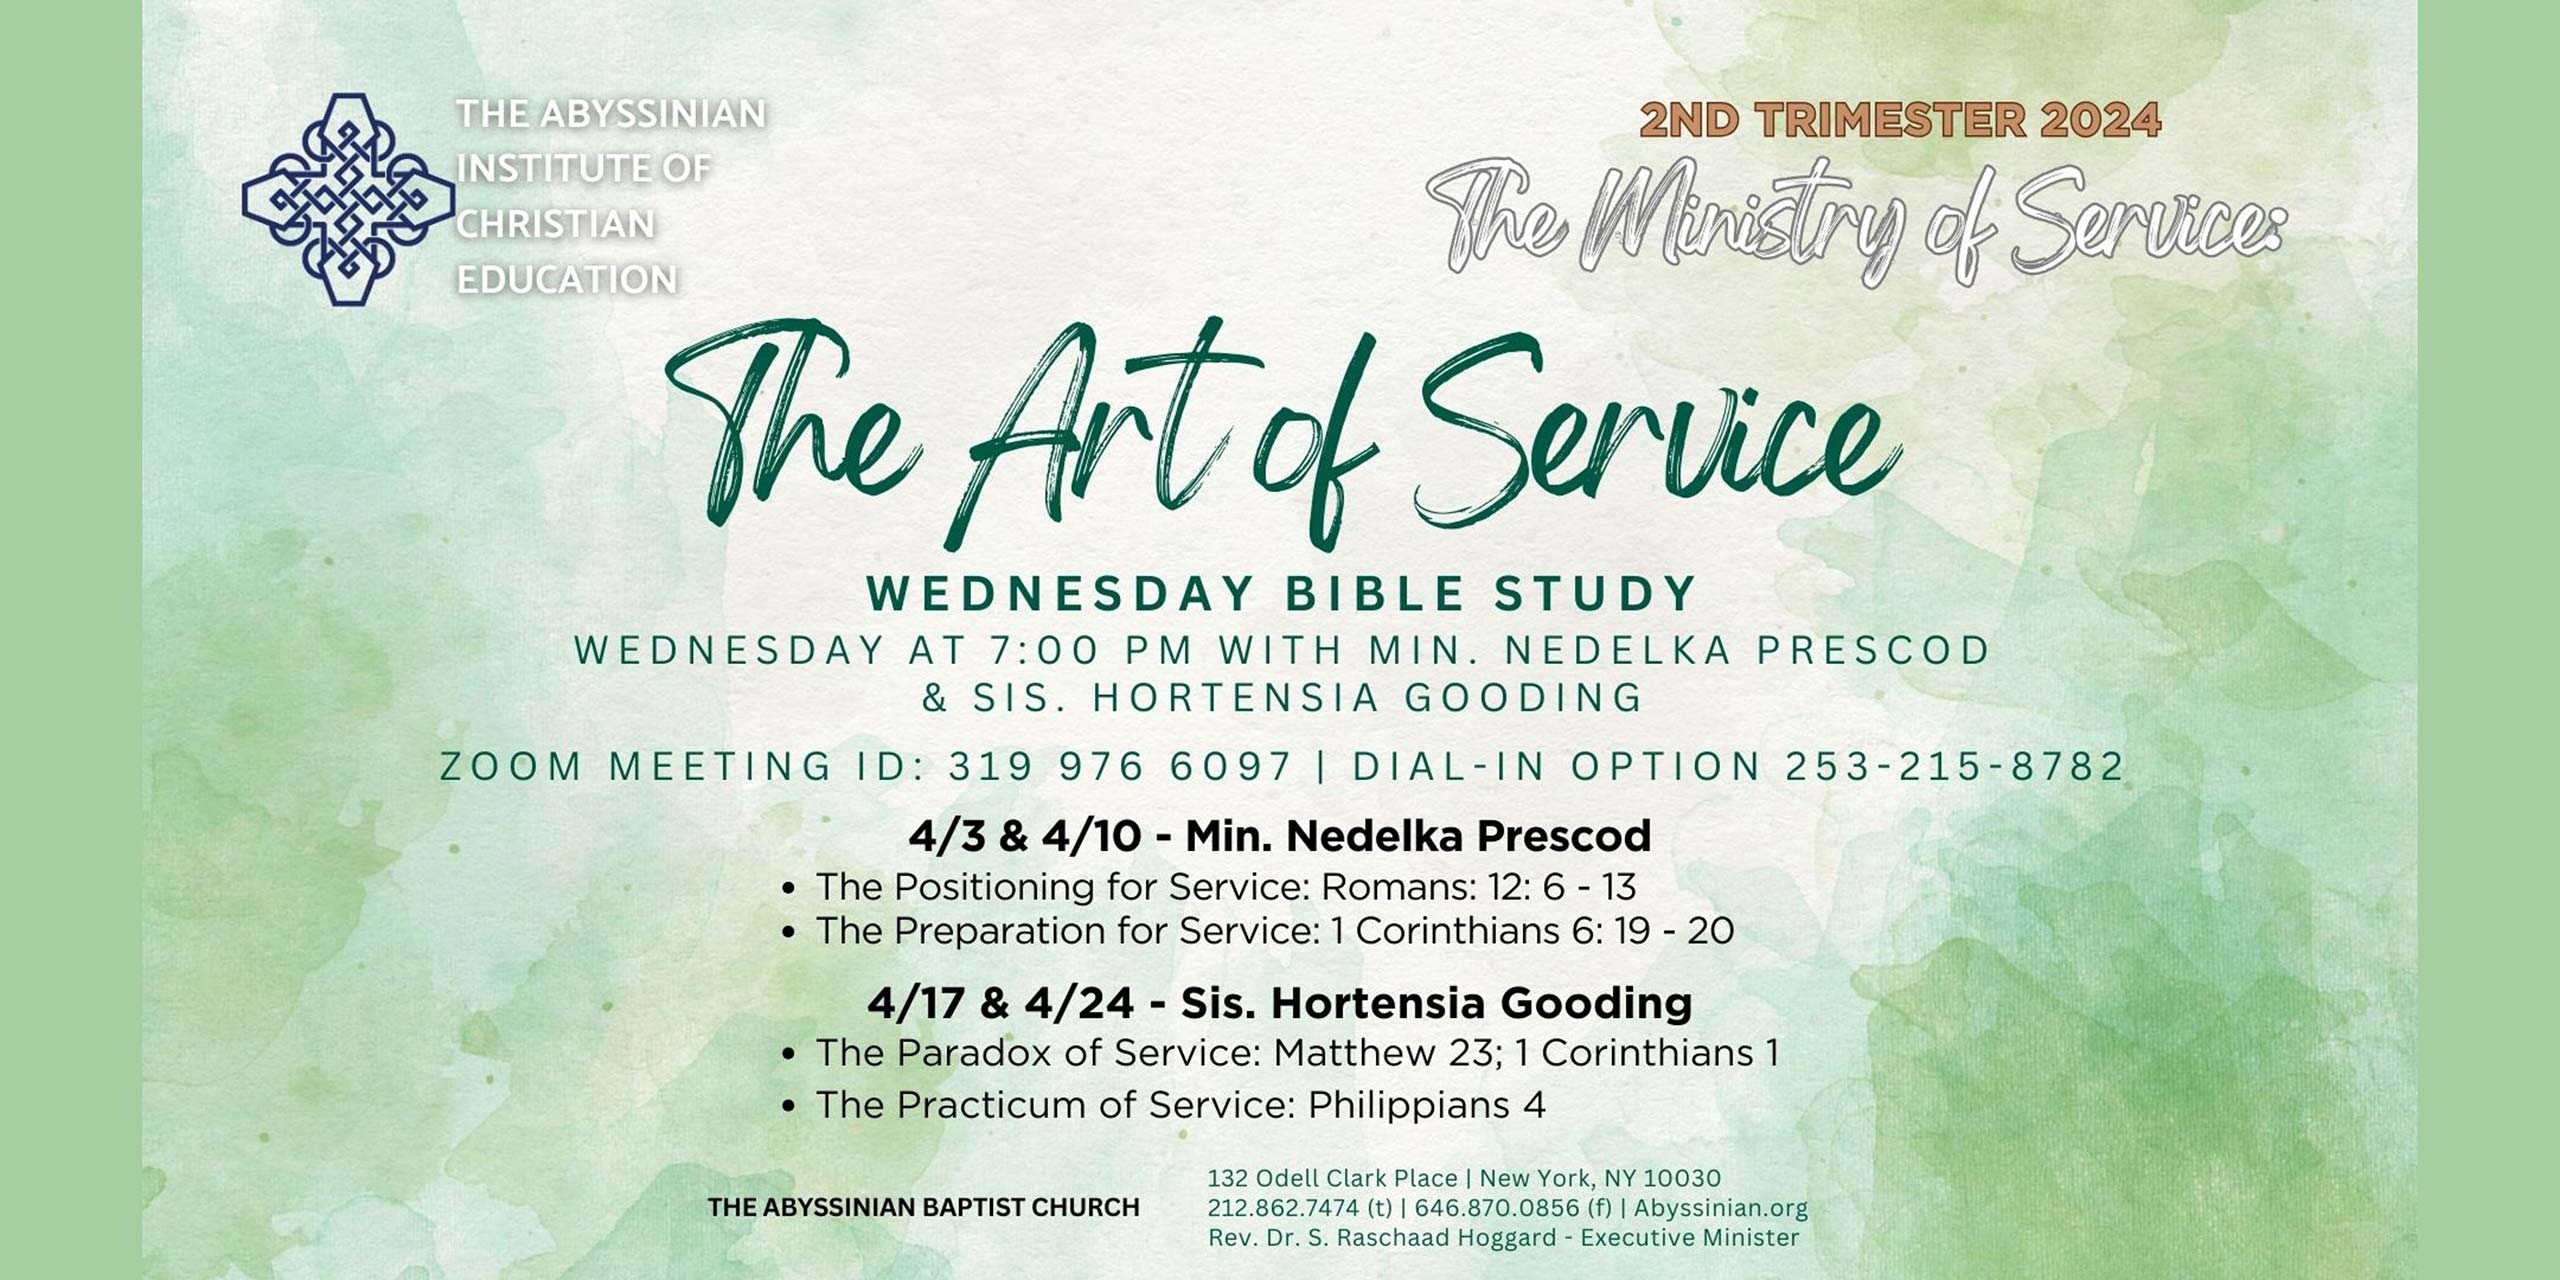 Wednesday Bible Study